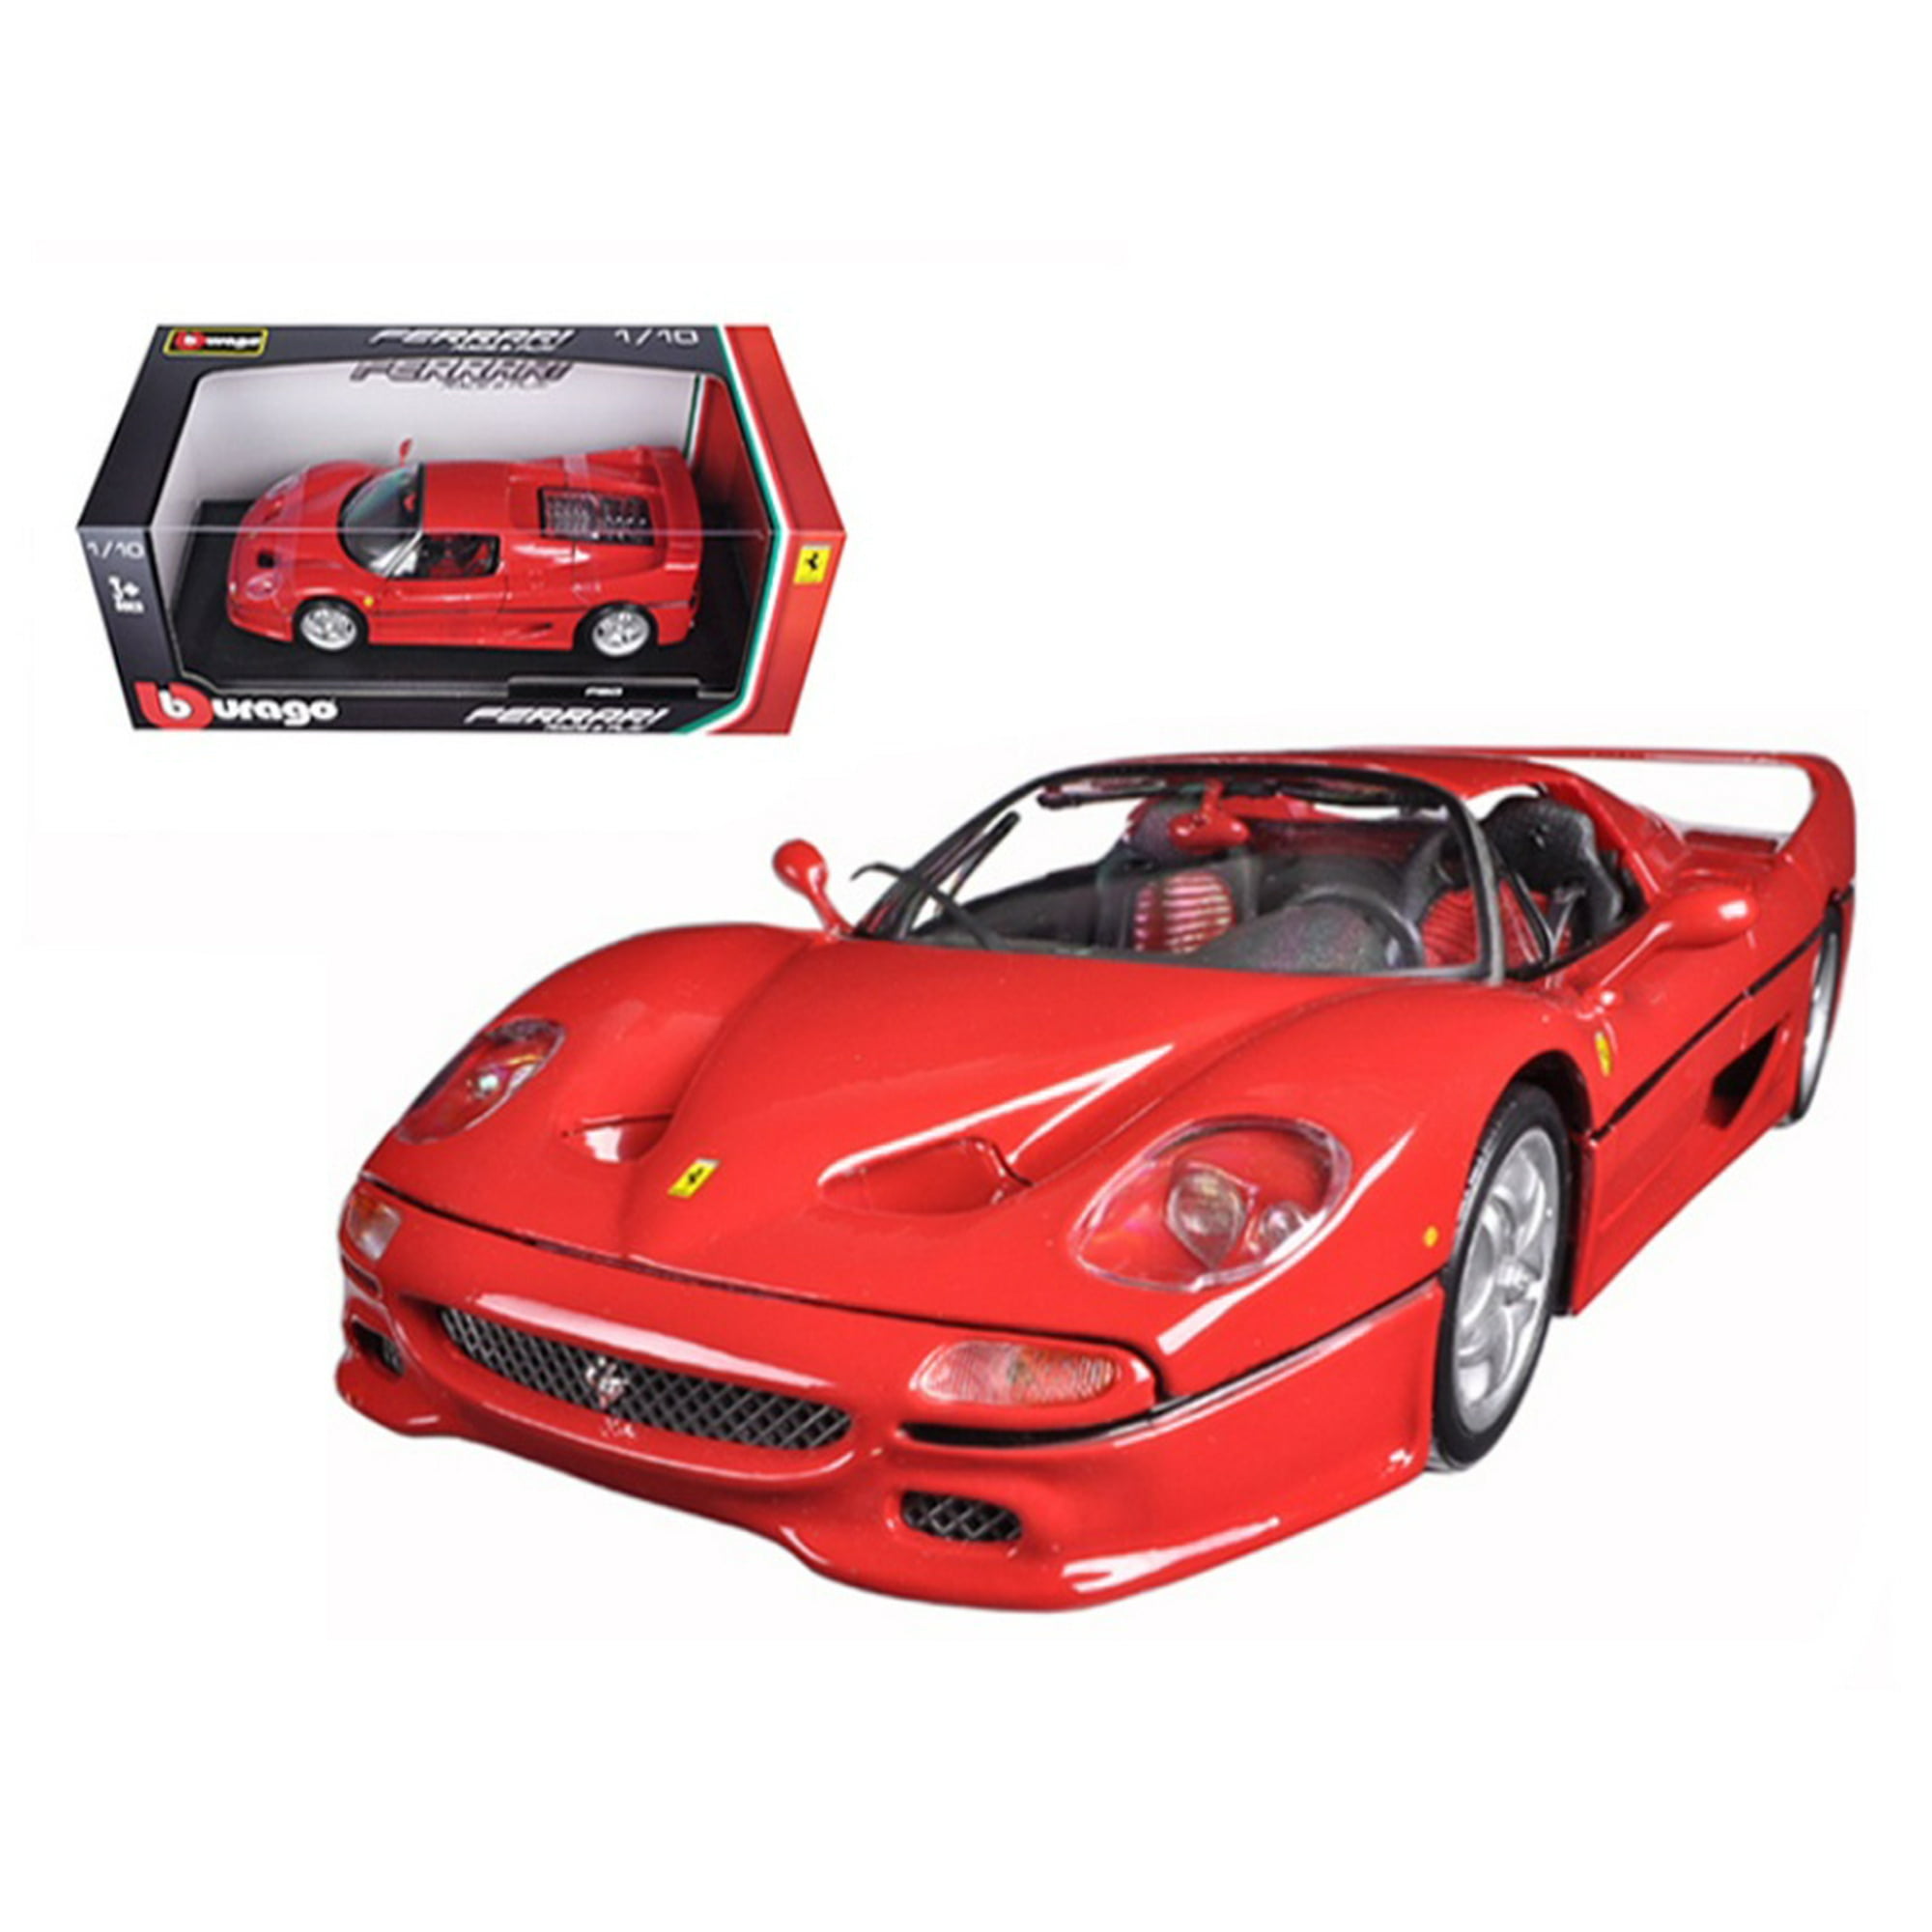 Ferrari F50 rojo 1/18 modelo de coche a presión de Bburago Bburago 16004r